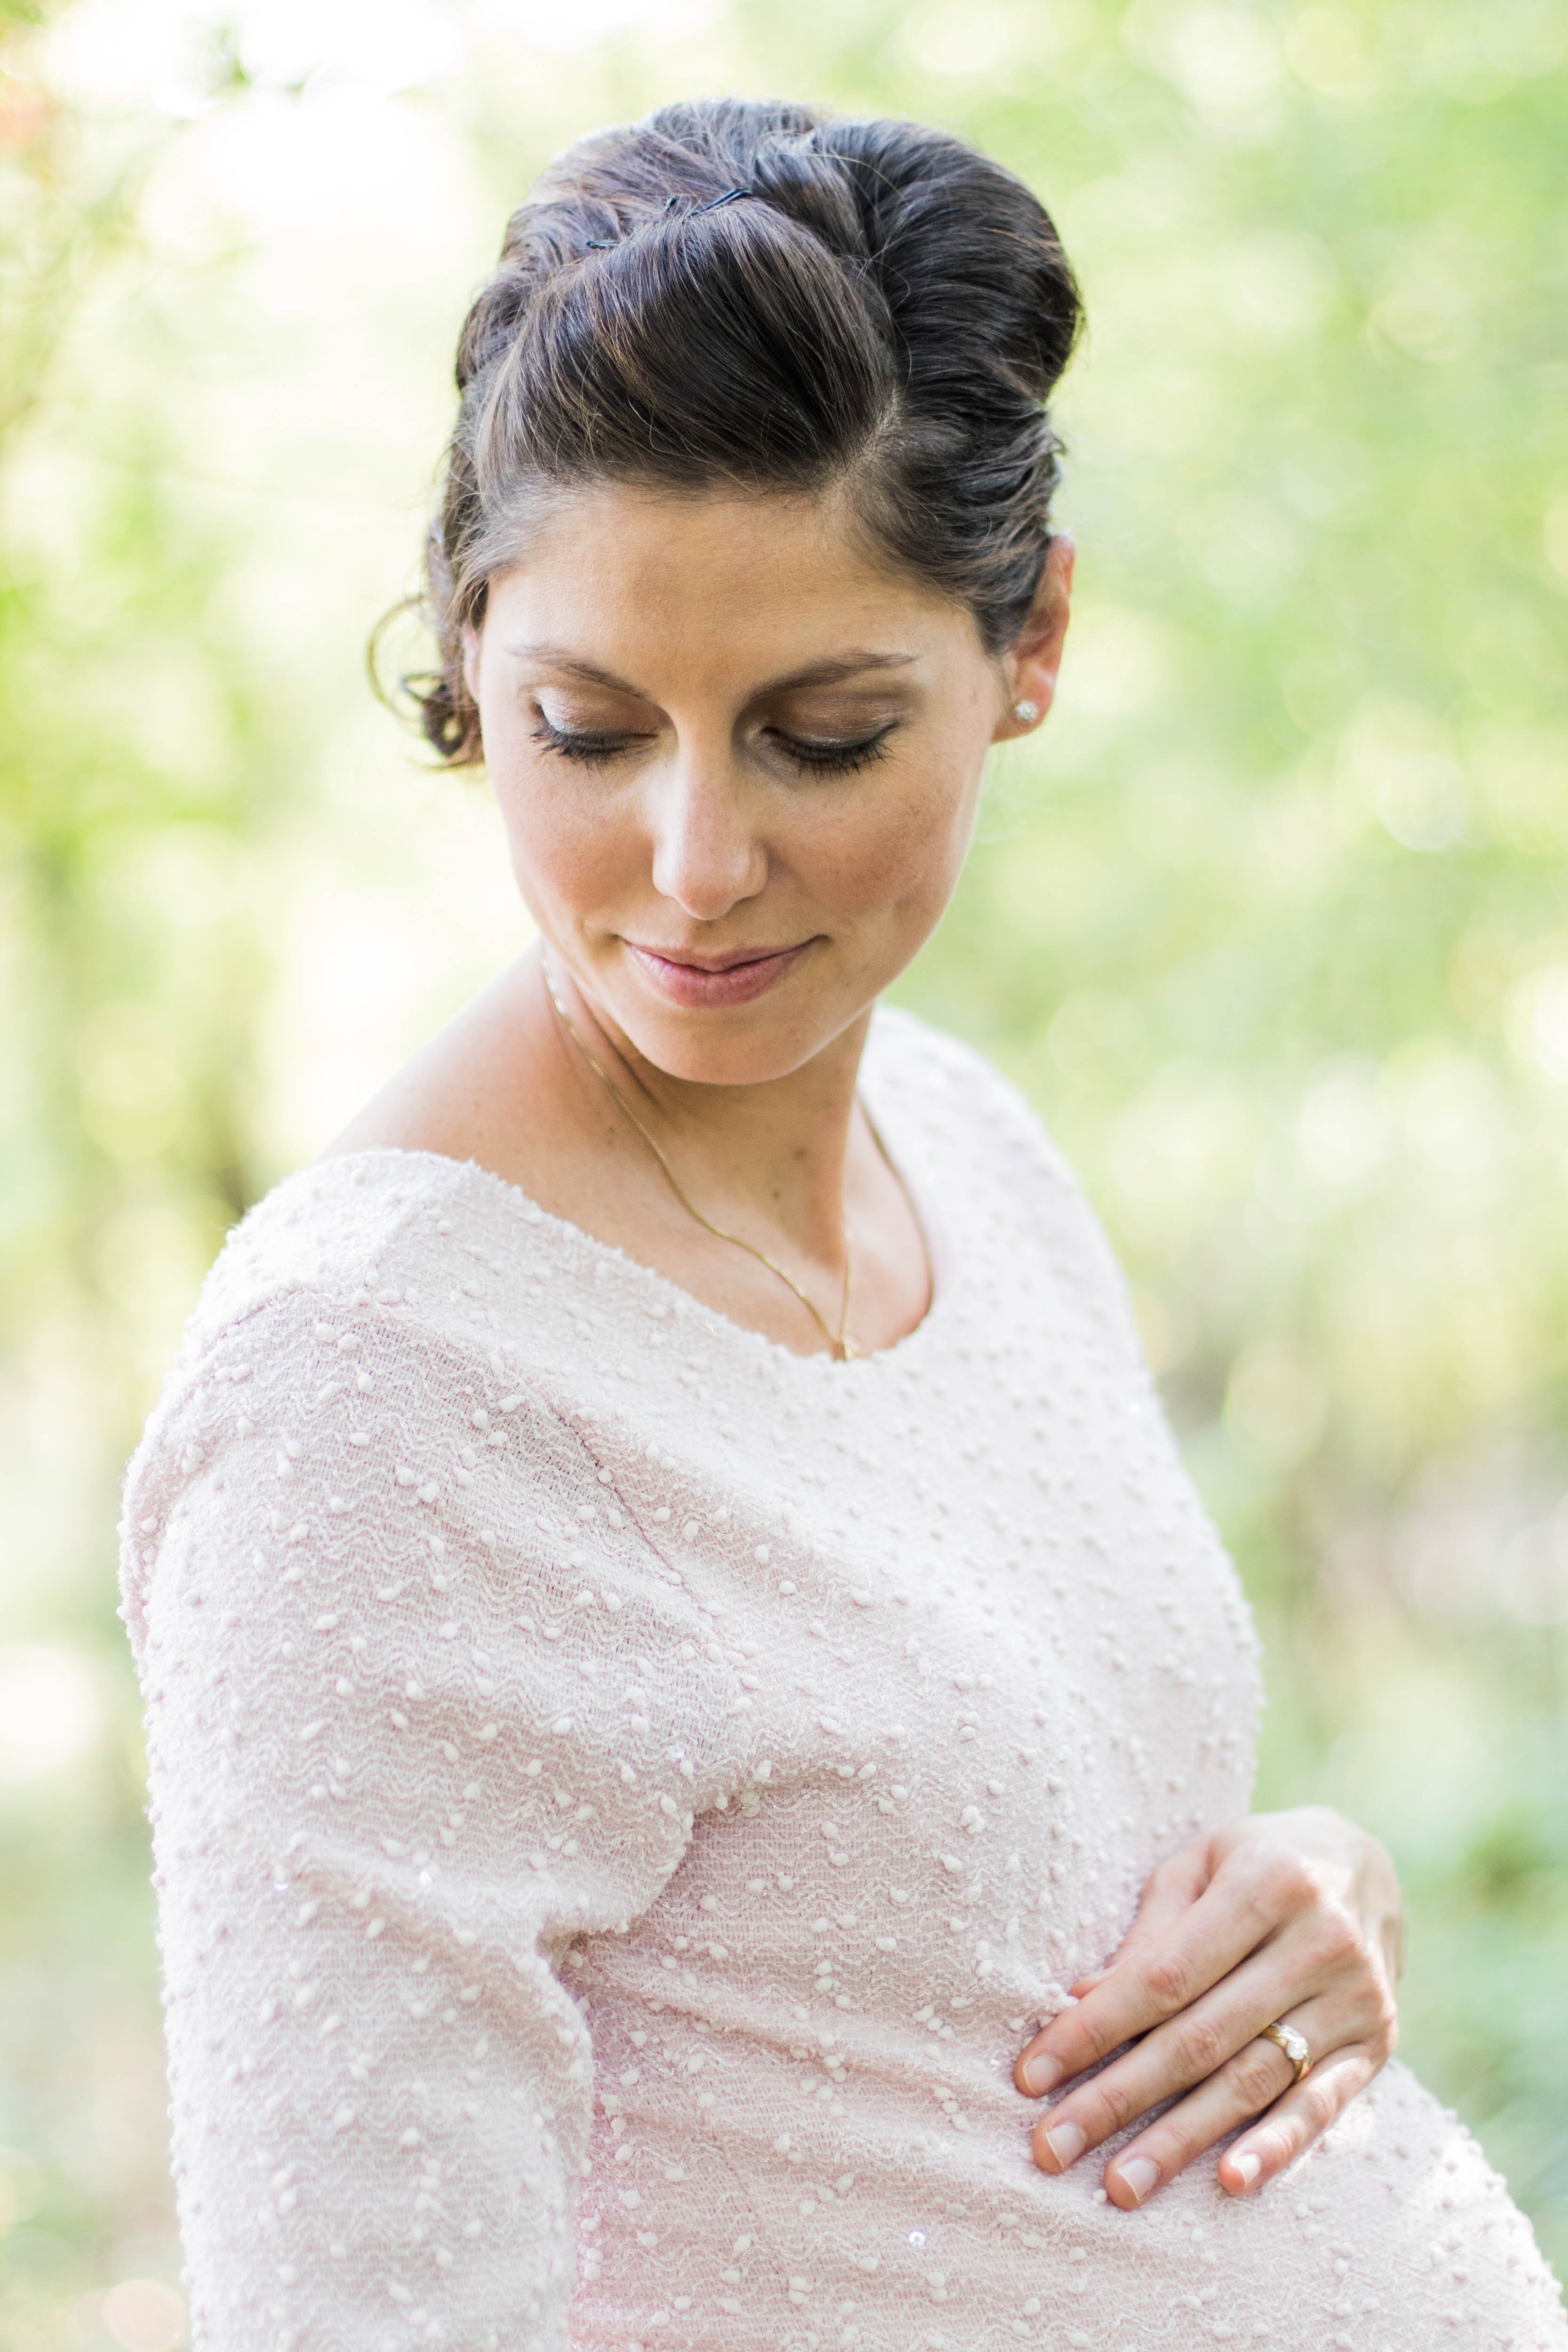 Una mujer con un embarazo avanzado. | Foto: Unsplash